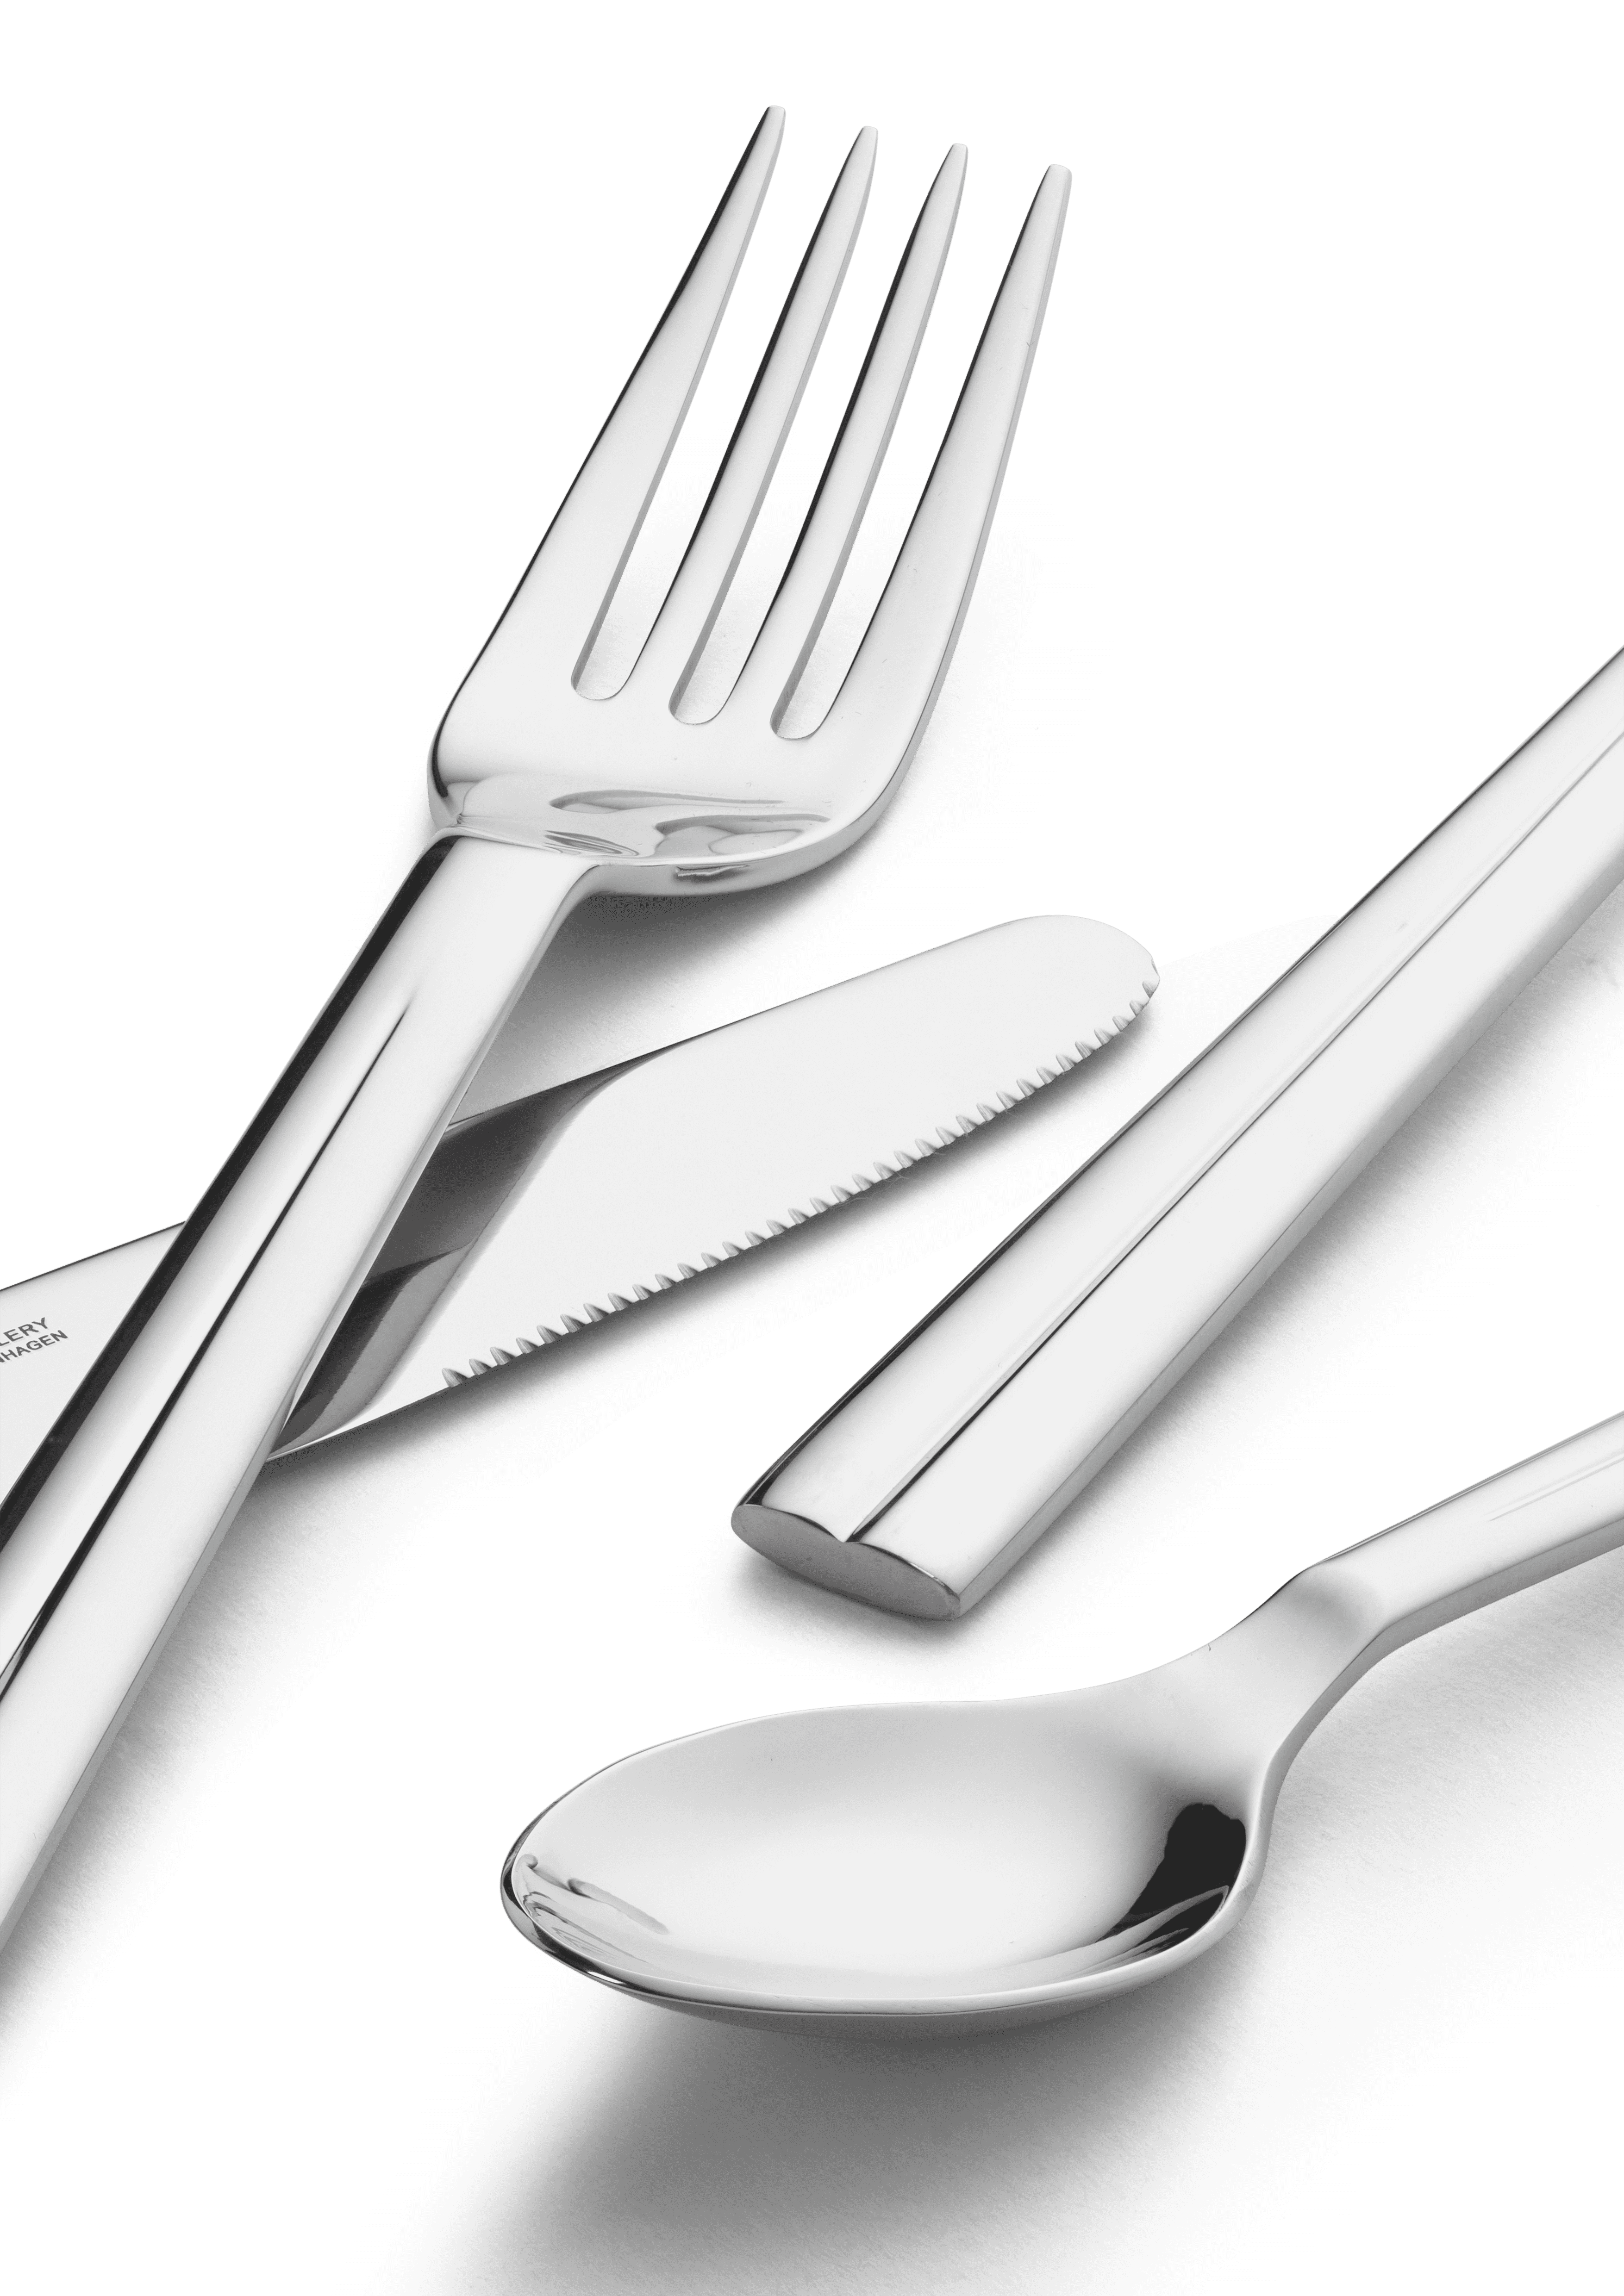 Cutlery sets 16 parts